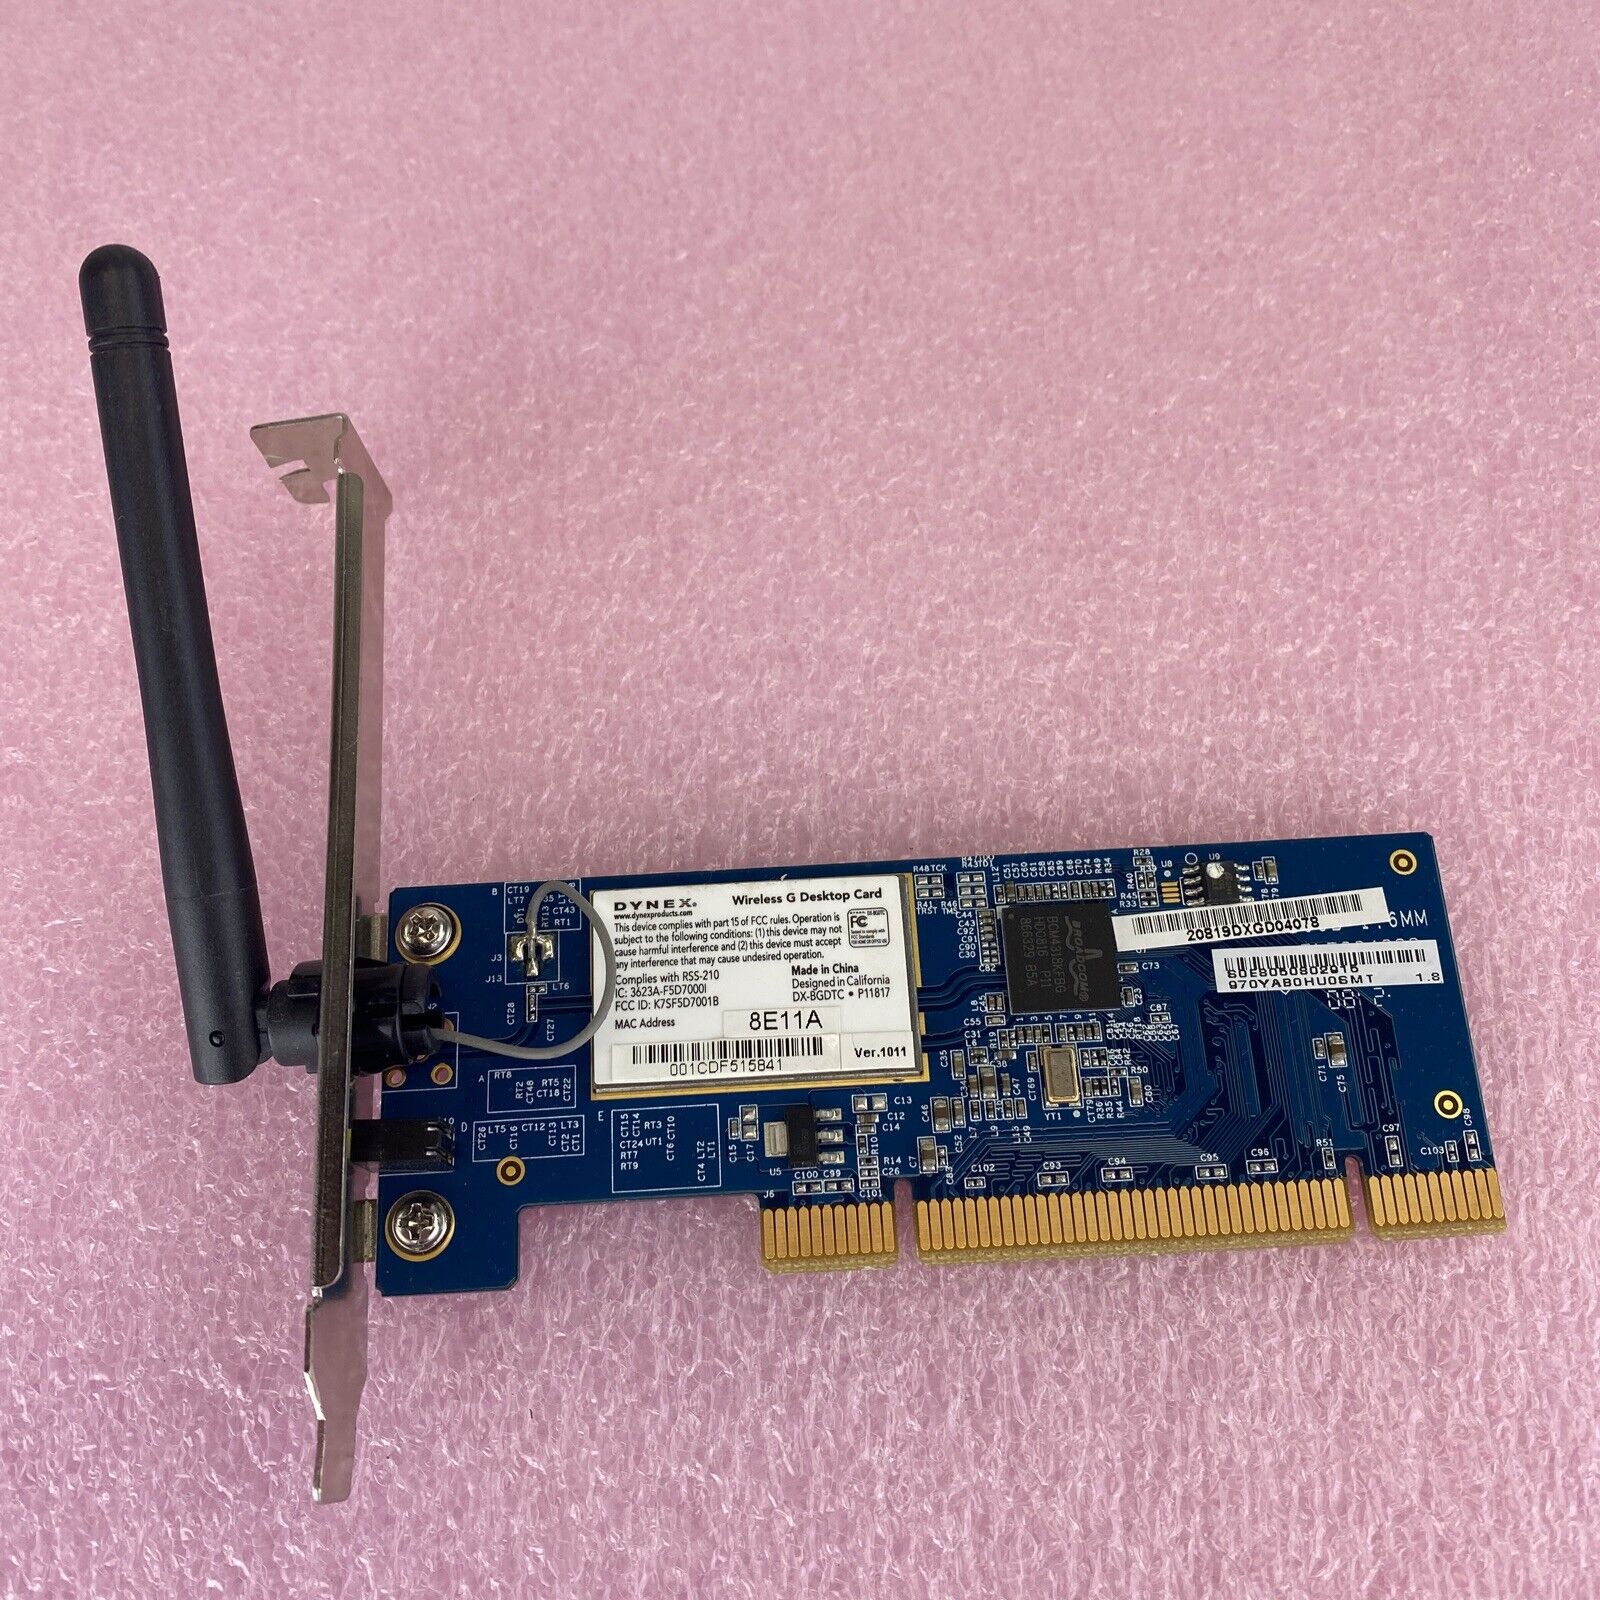 Dynex DX-BGDTC 802.11G Wireless G desktop PCI card